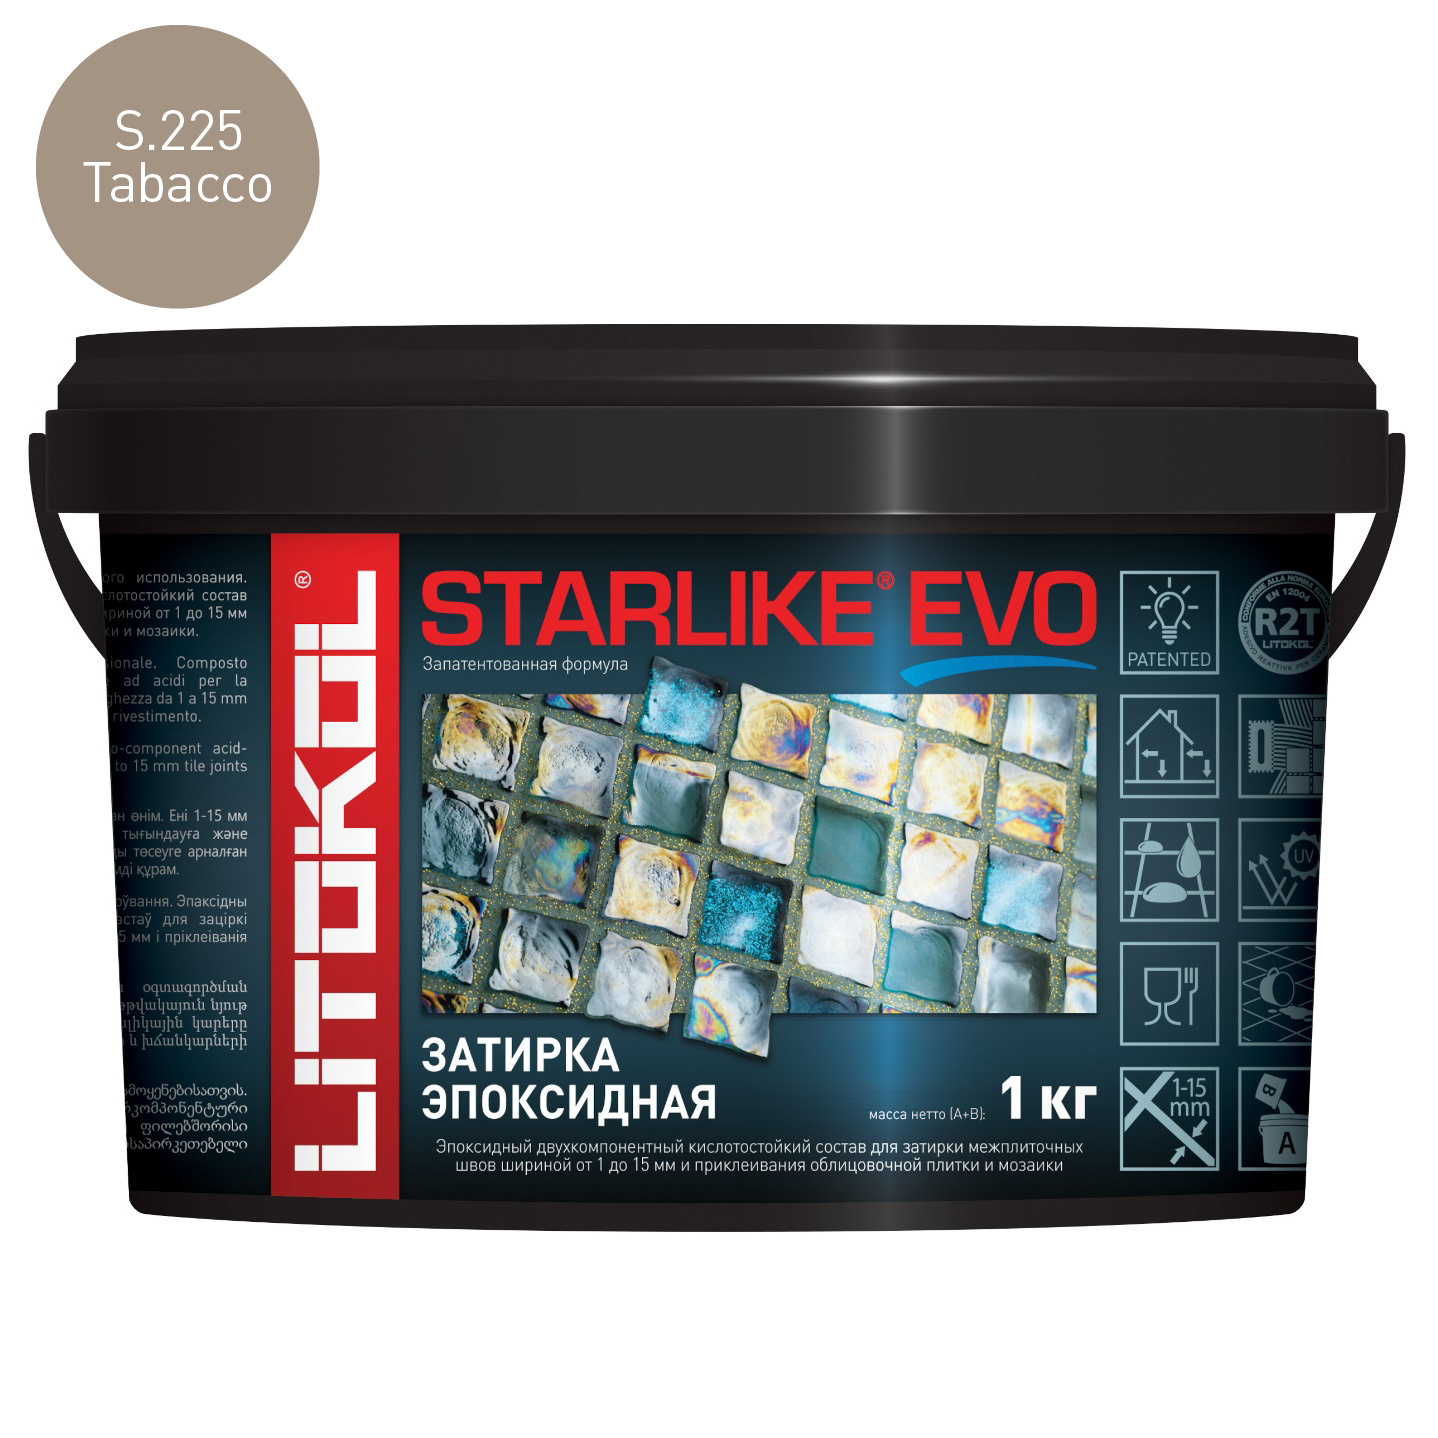 Затирка эпоксидная Litokol Starlike Evo S.225 Tabacco (1 кг.)